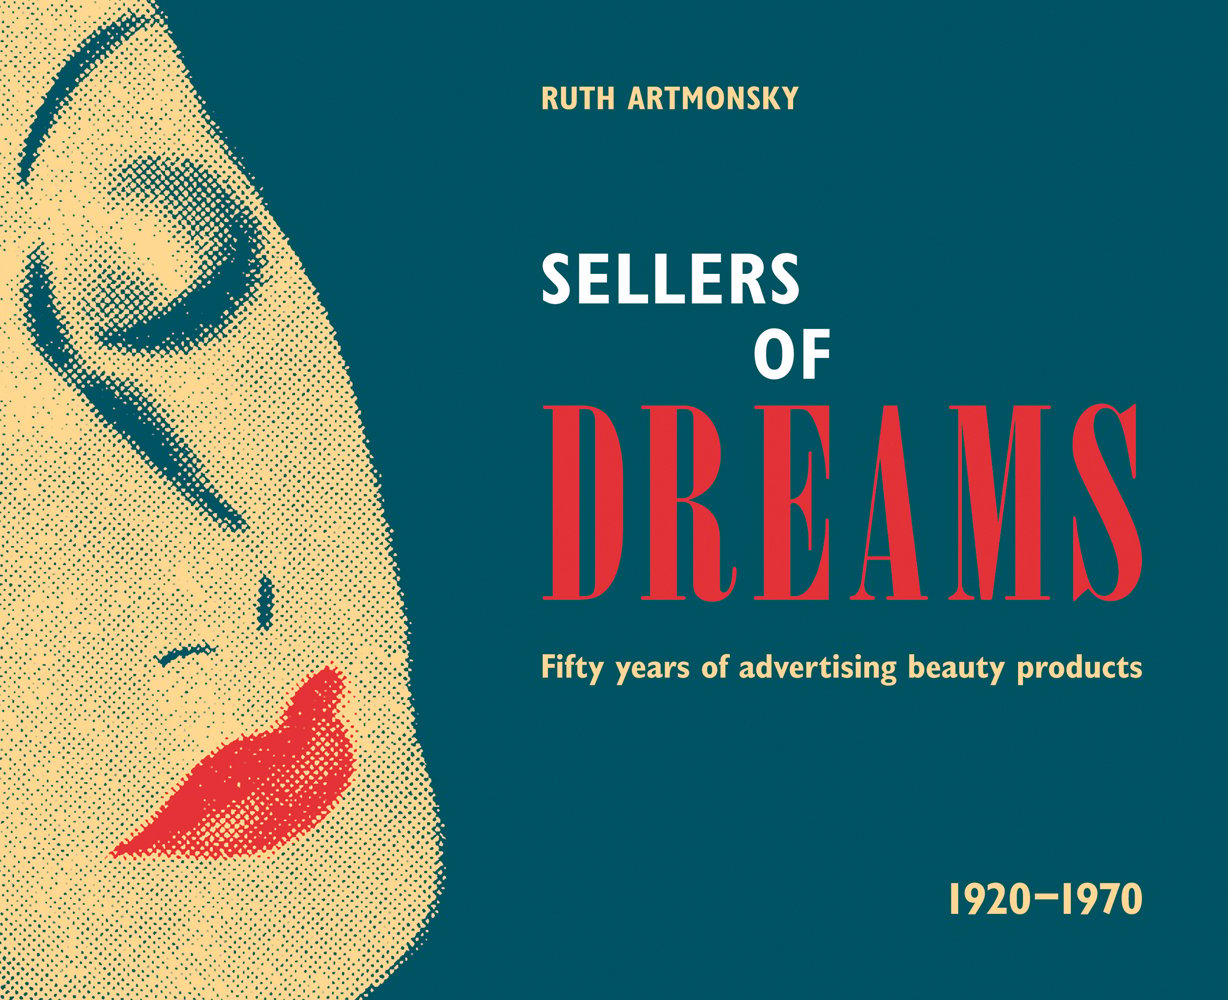 Sellers of Dreams